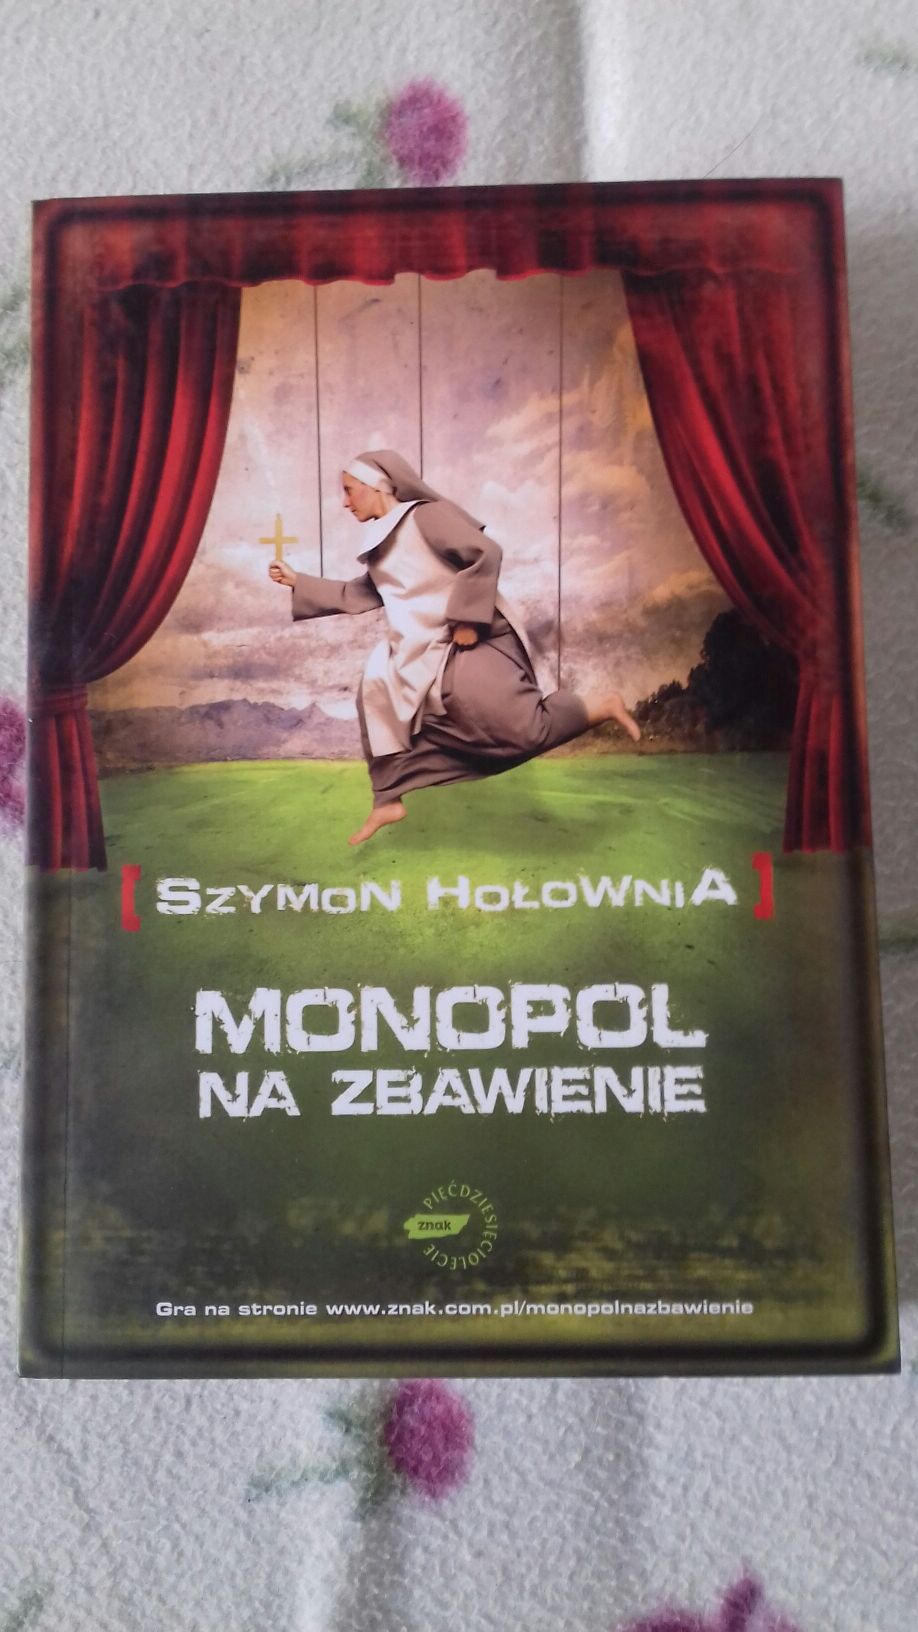 Szymon Hołownia - Monopol na zbawienie; prezent